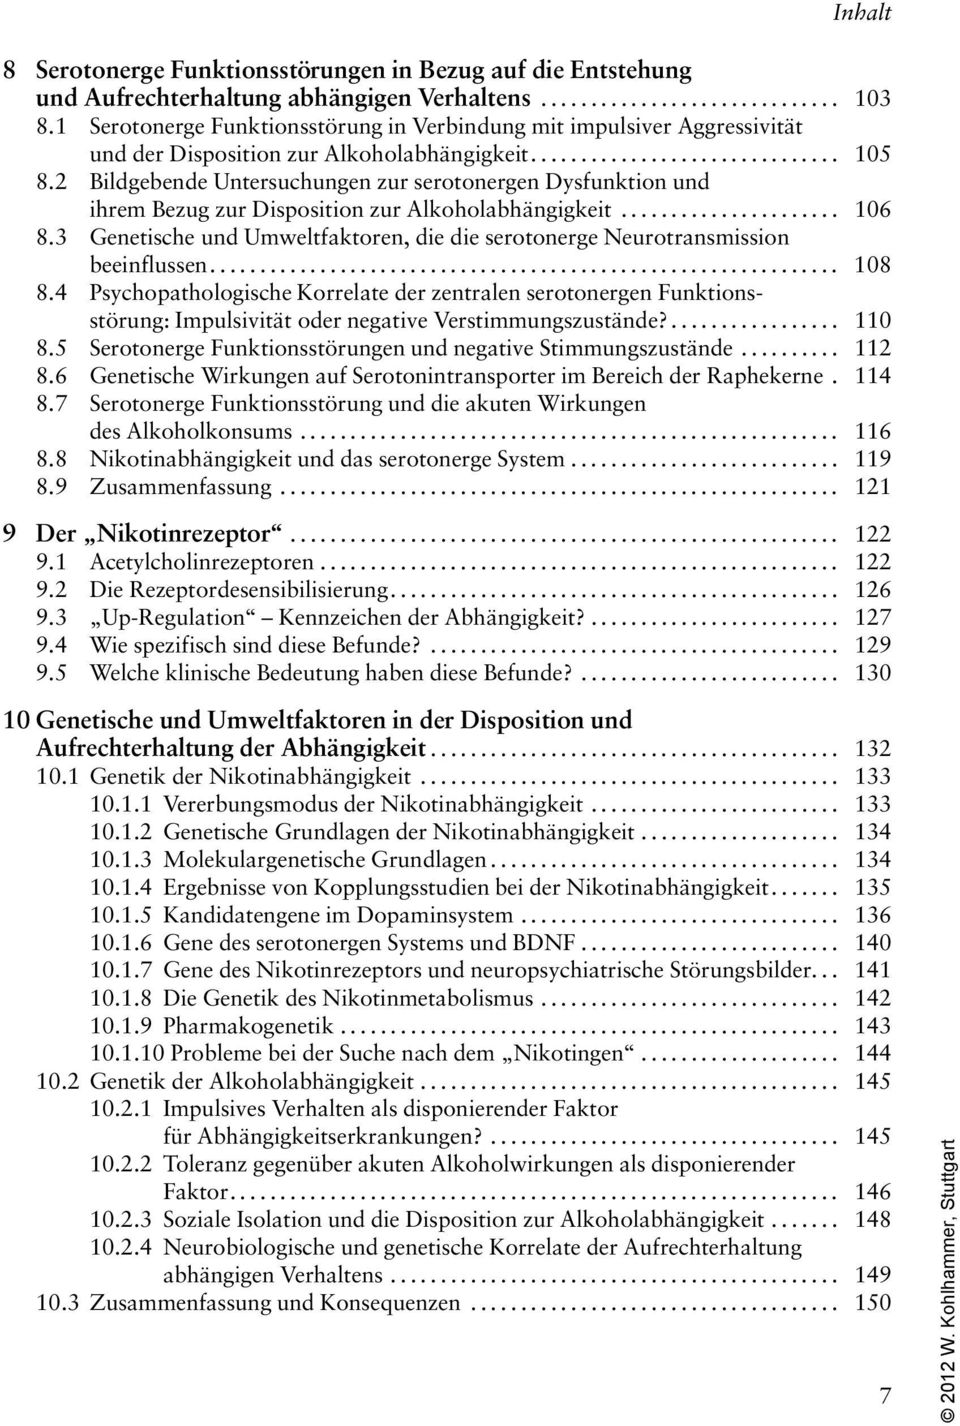 2 Bildgebende Untersuchungen zur serotonergen Dysfunktion und ihrem Bezug zur Disposition zur Alkoholabhängigkeit... 106 8.